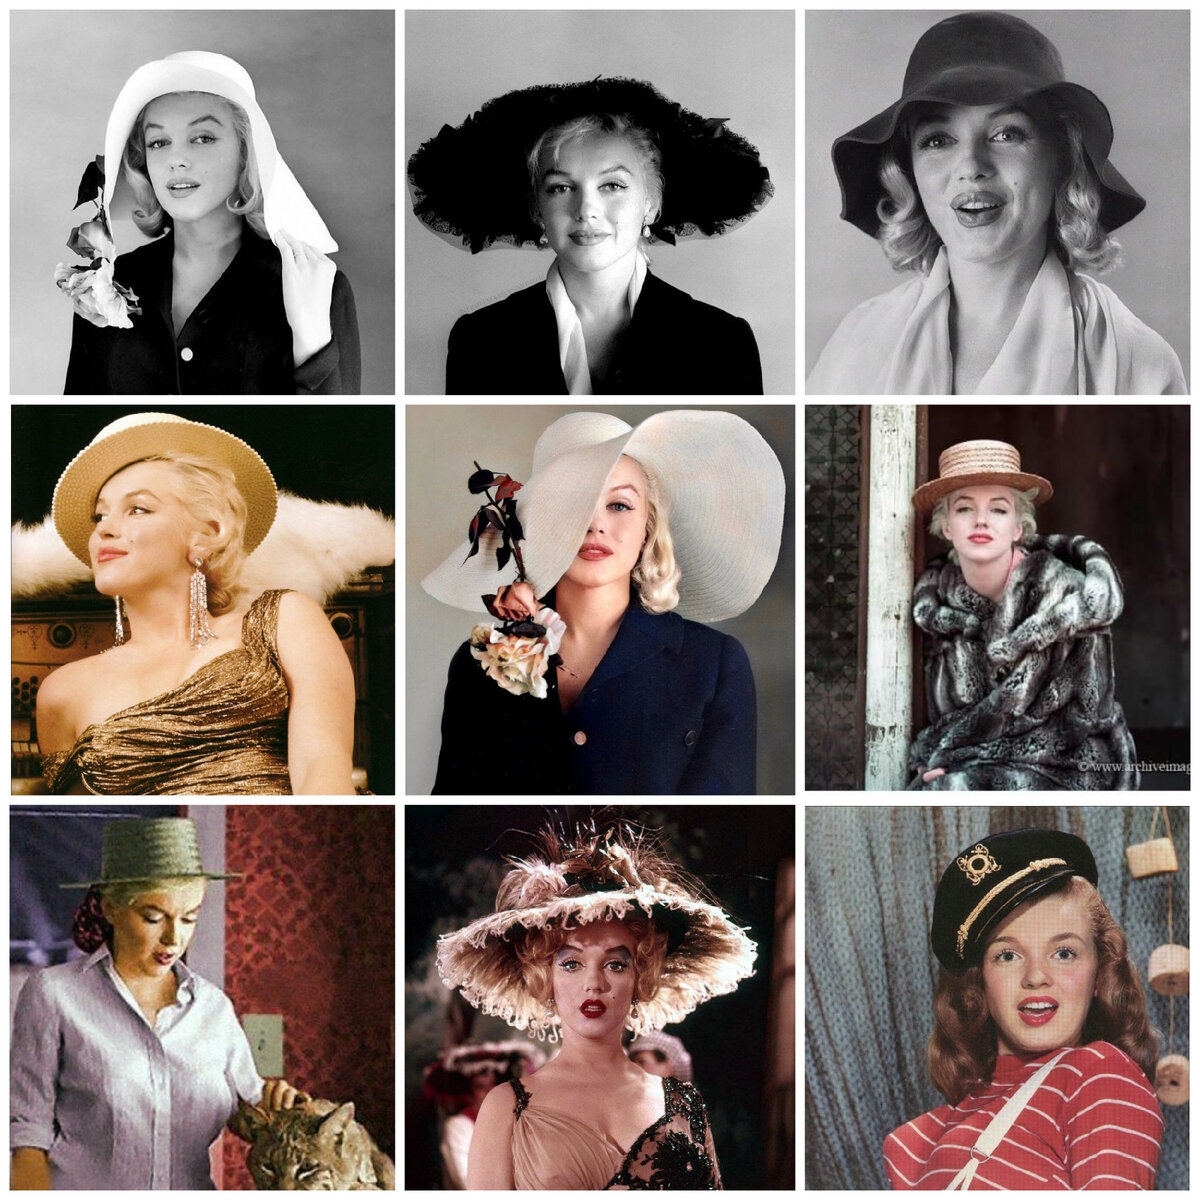 Мэрилин Монро примерила очень много вариантов. В её образах встречаются шляпки Гаминов, Театрального Романтика, Классические варианты и даже те, которые подходят Драматикам. Какая ей больше подходит?